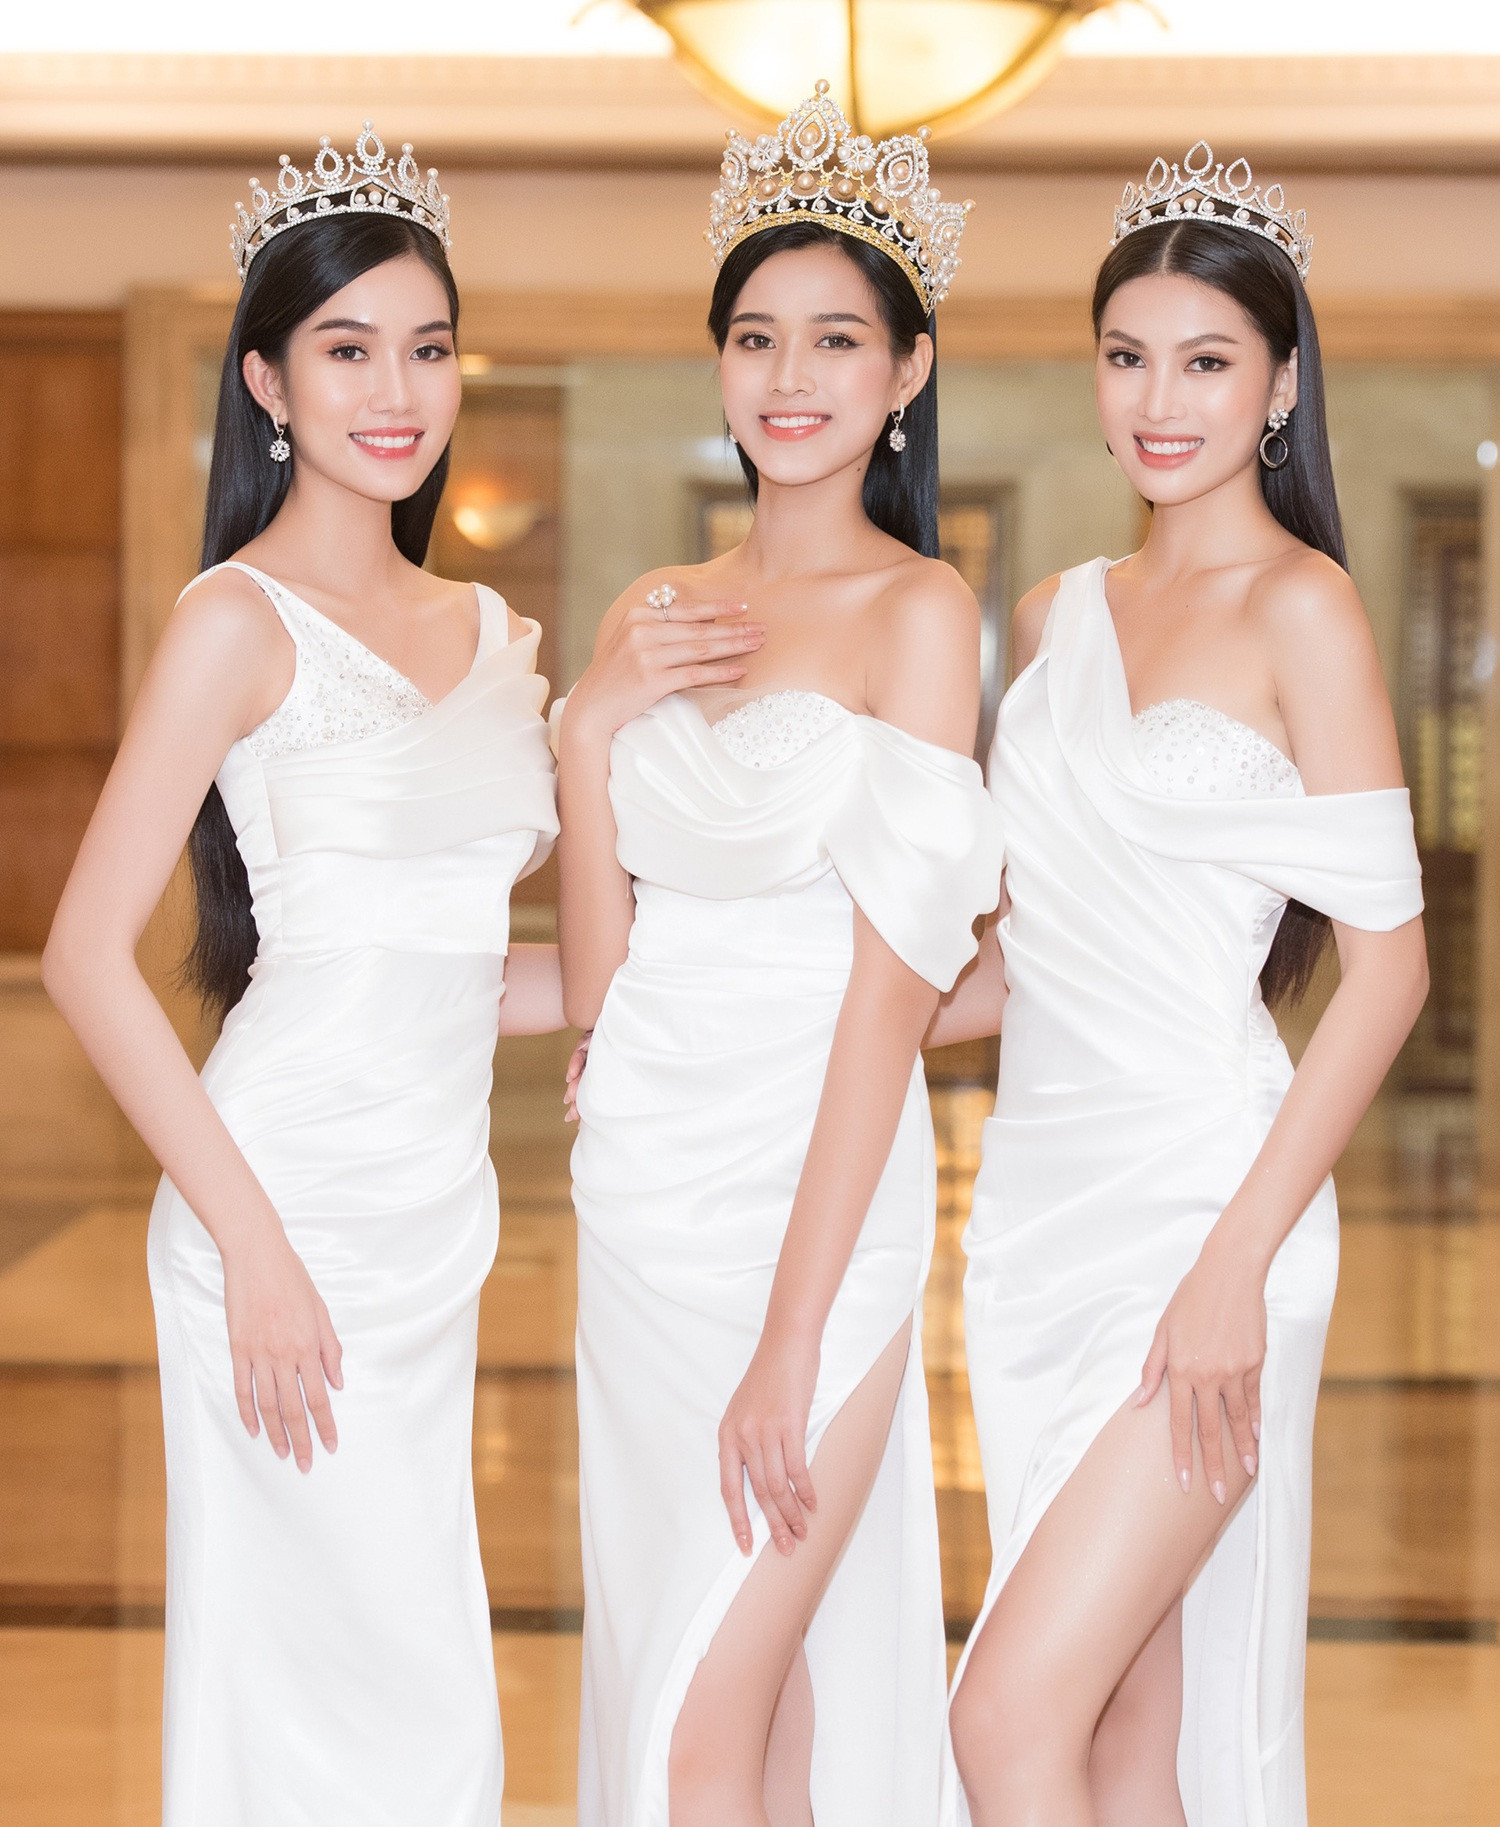 Top 3 Hoa hậu Việt Nam mỗi người đều sở hữu một vẻ đẹp riêng, nhưng với sự lựa chọn lần này cả 3 người đẹp đều nhận được sự ủng hộ của khán giả.